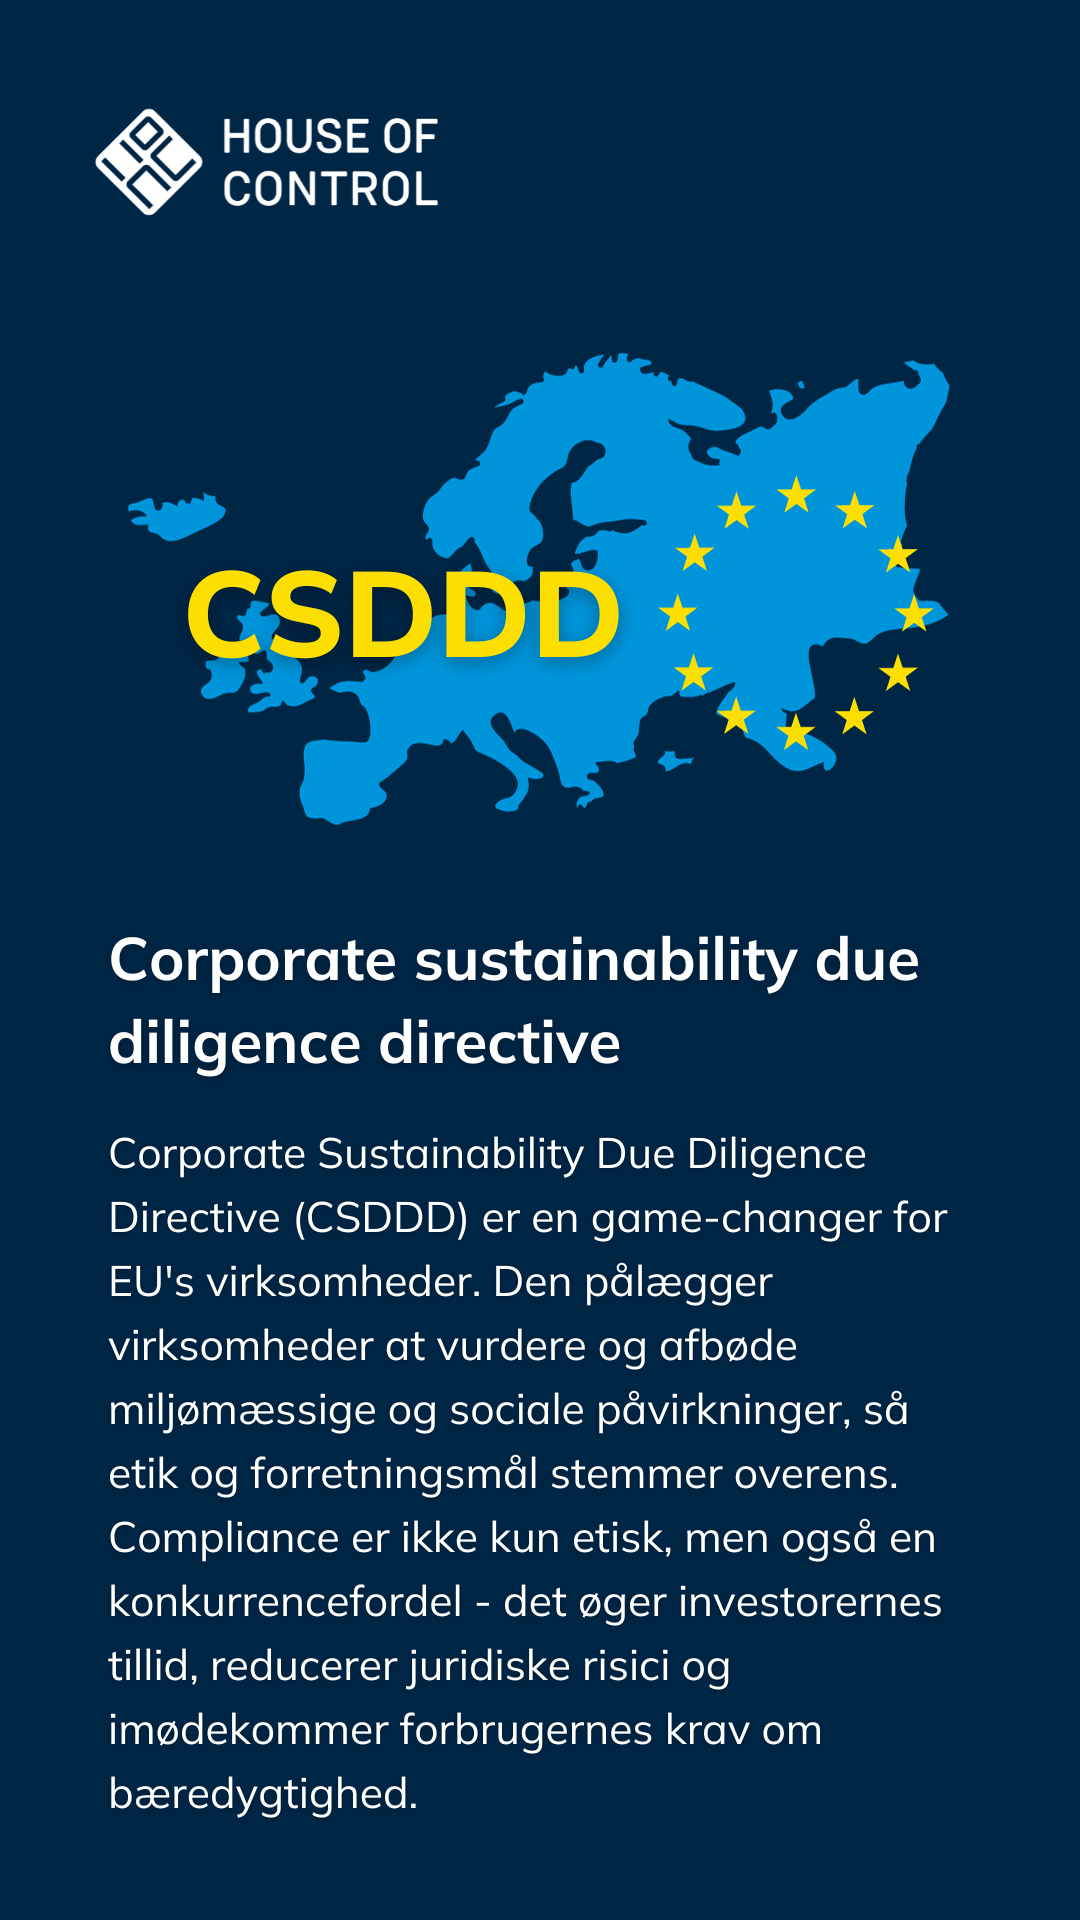 CSDDD - DK - Korrekt